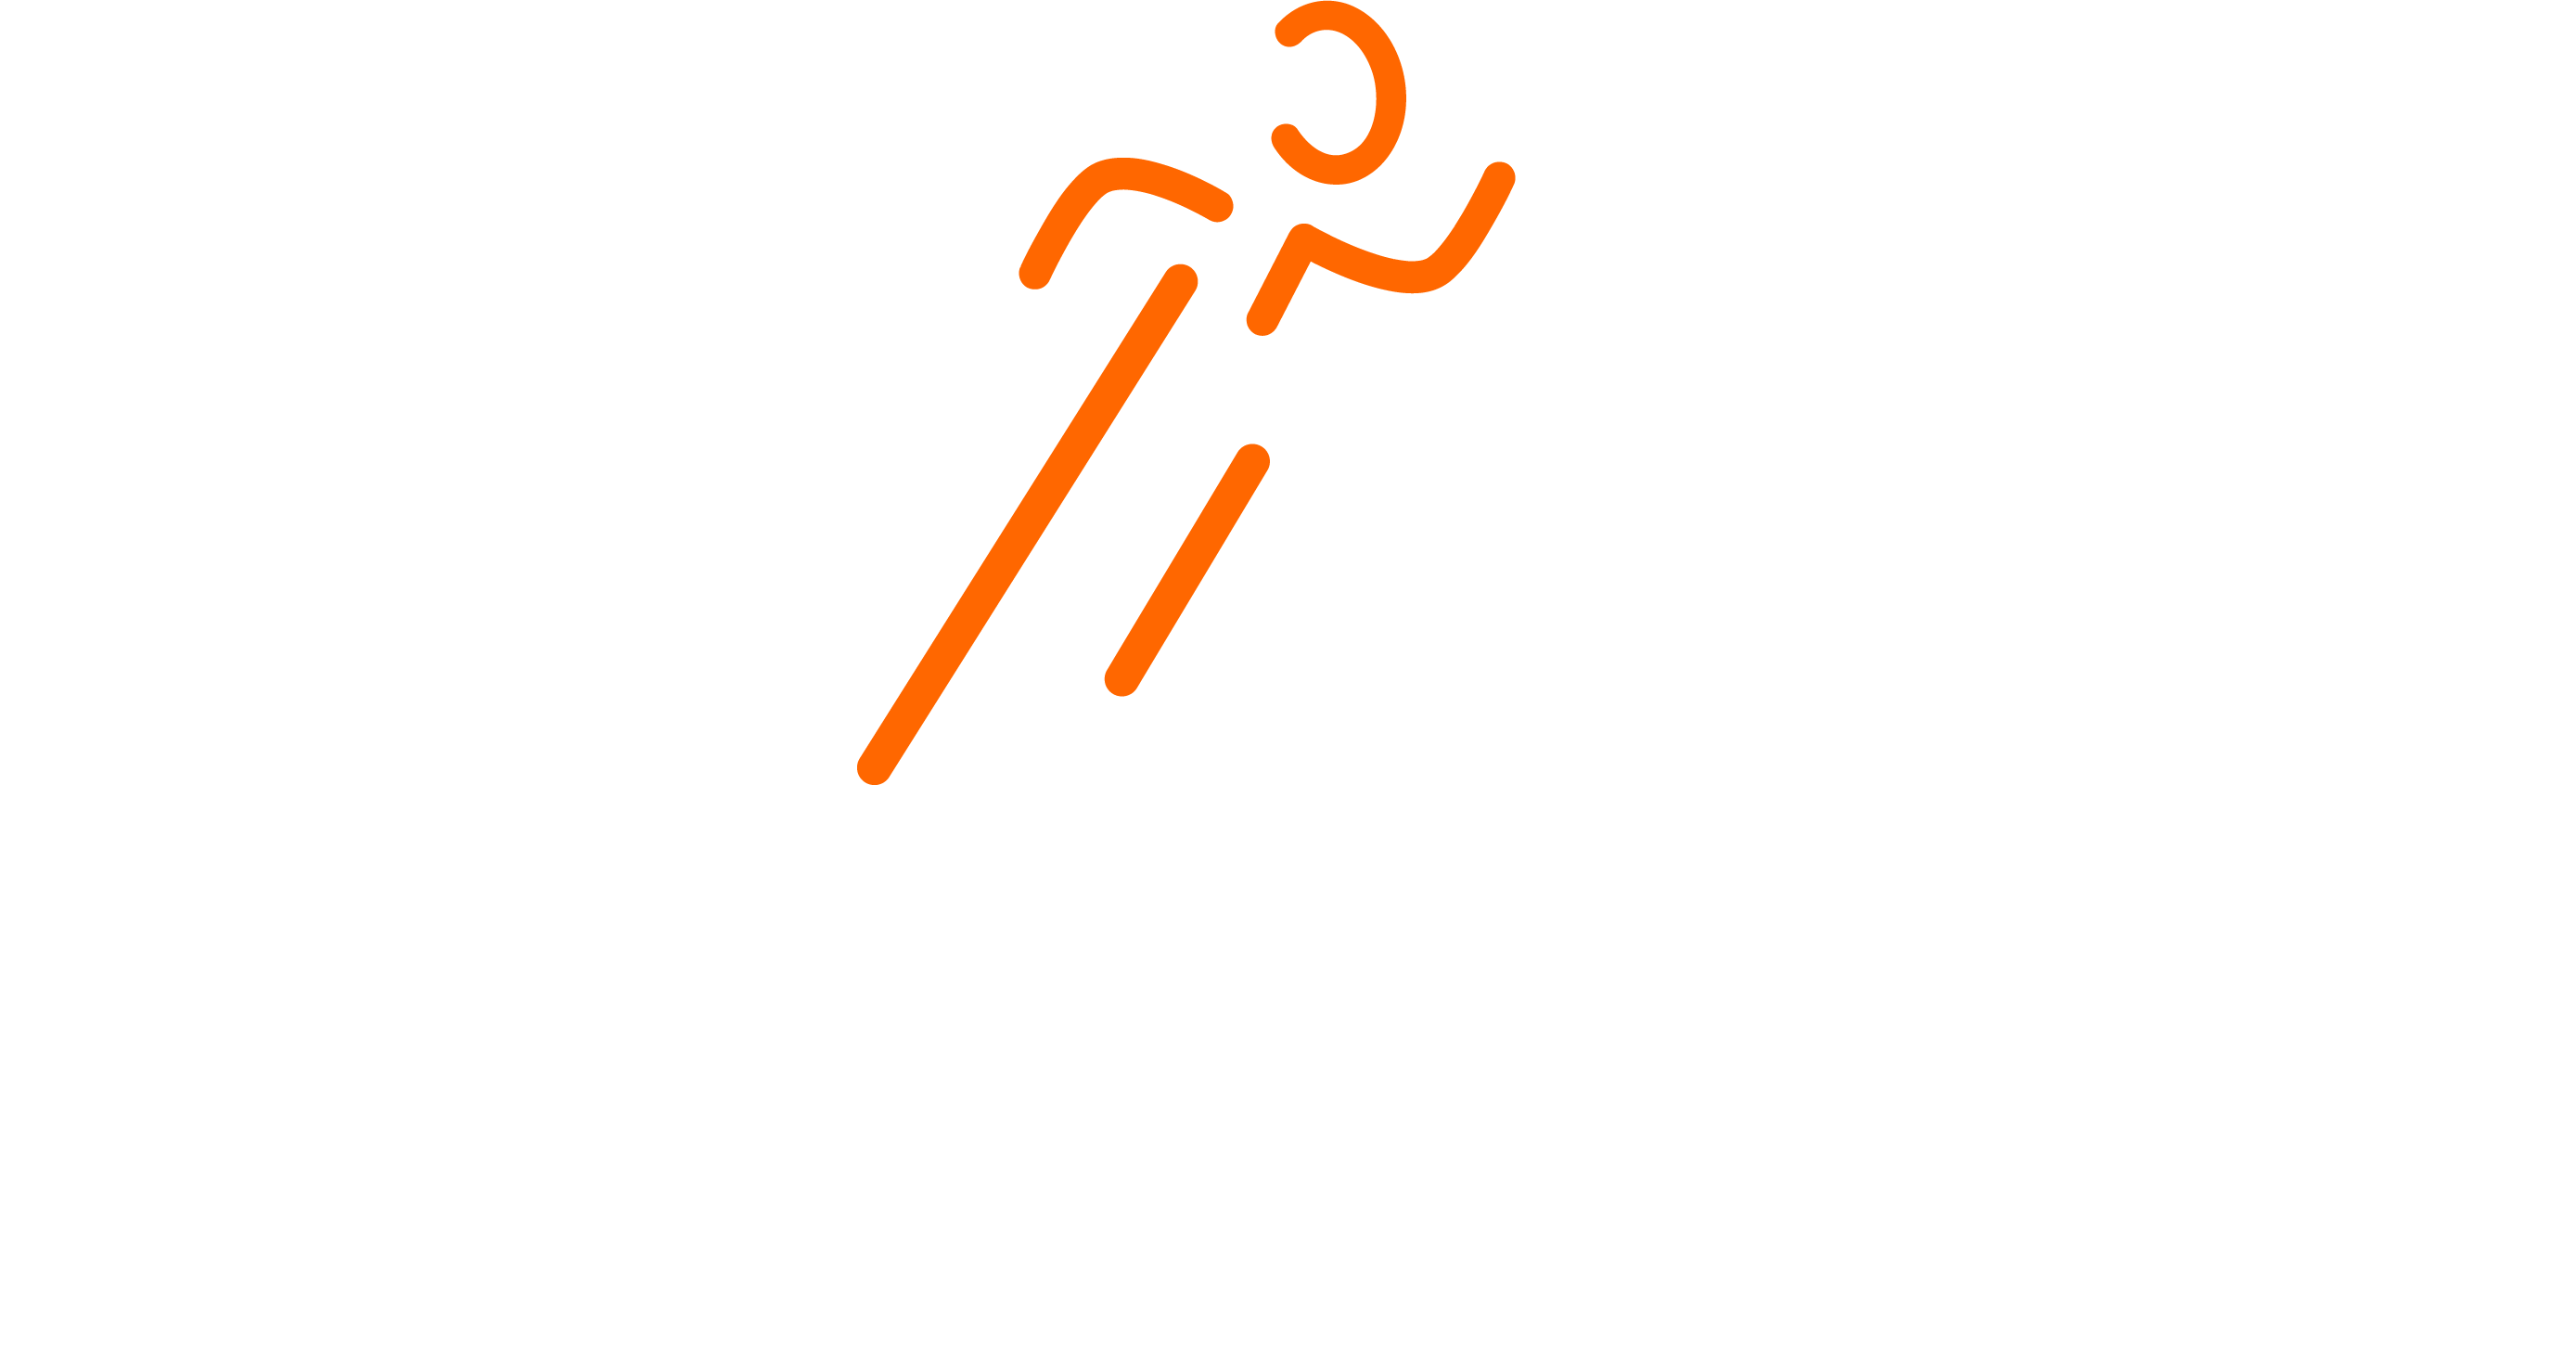 Churandy Martina Foundation